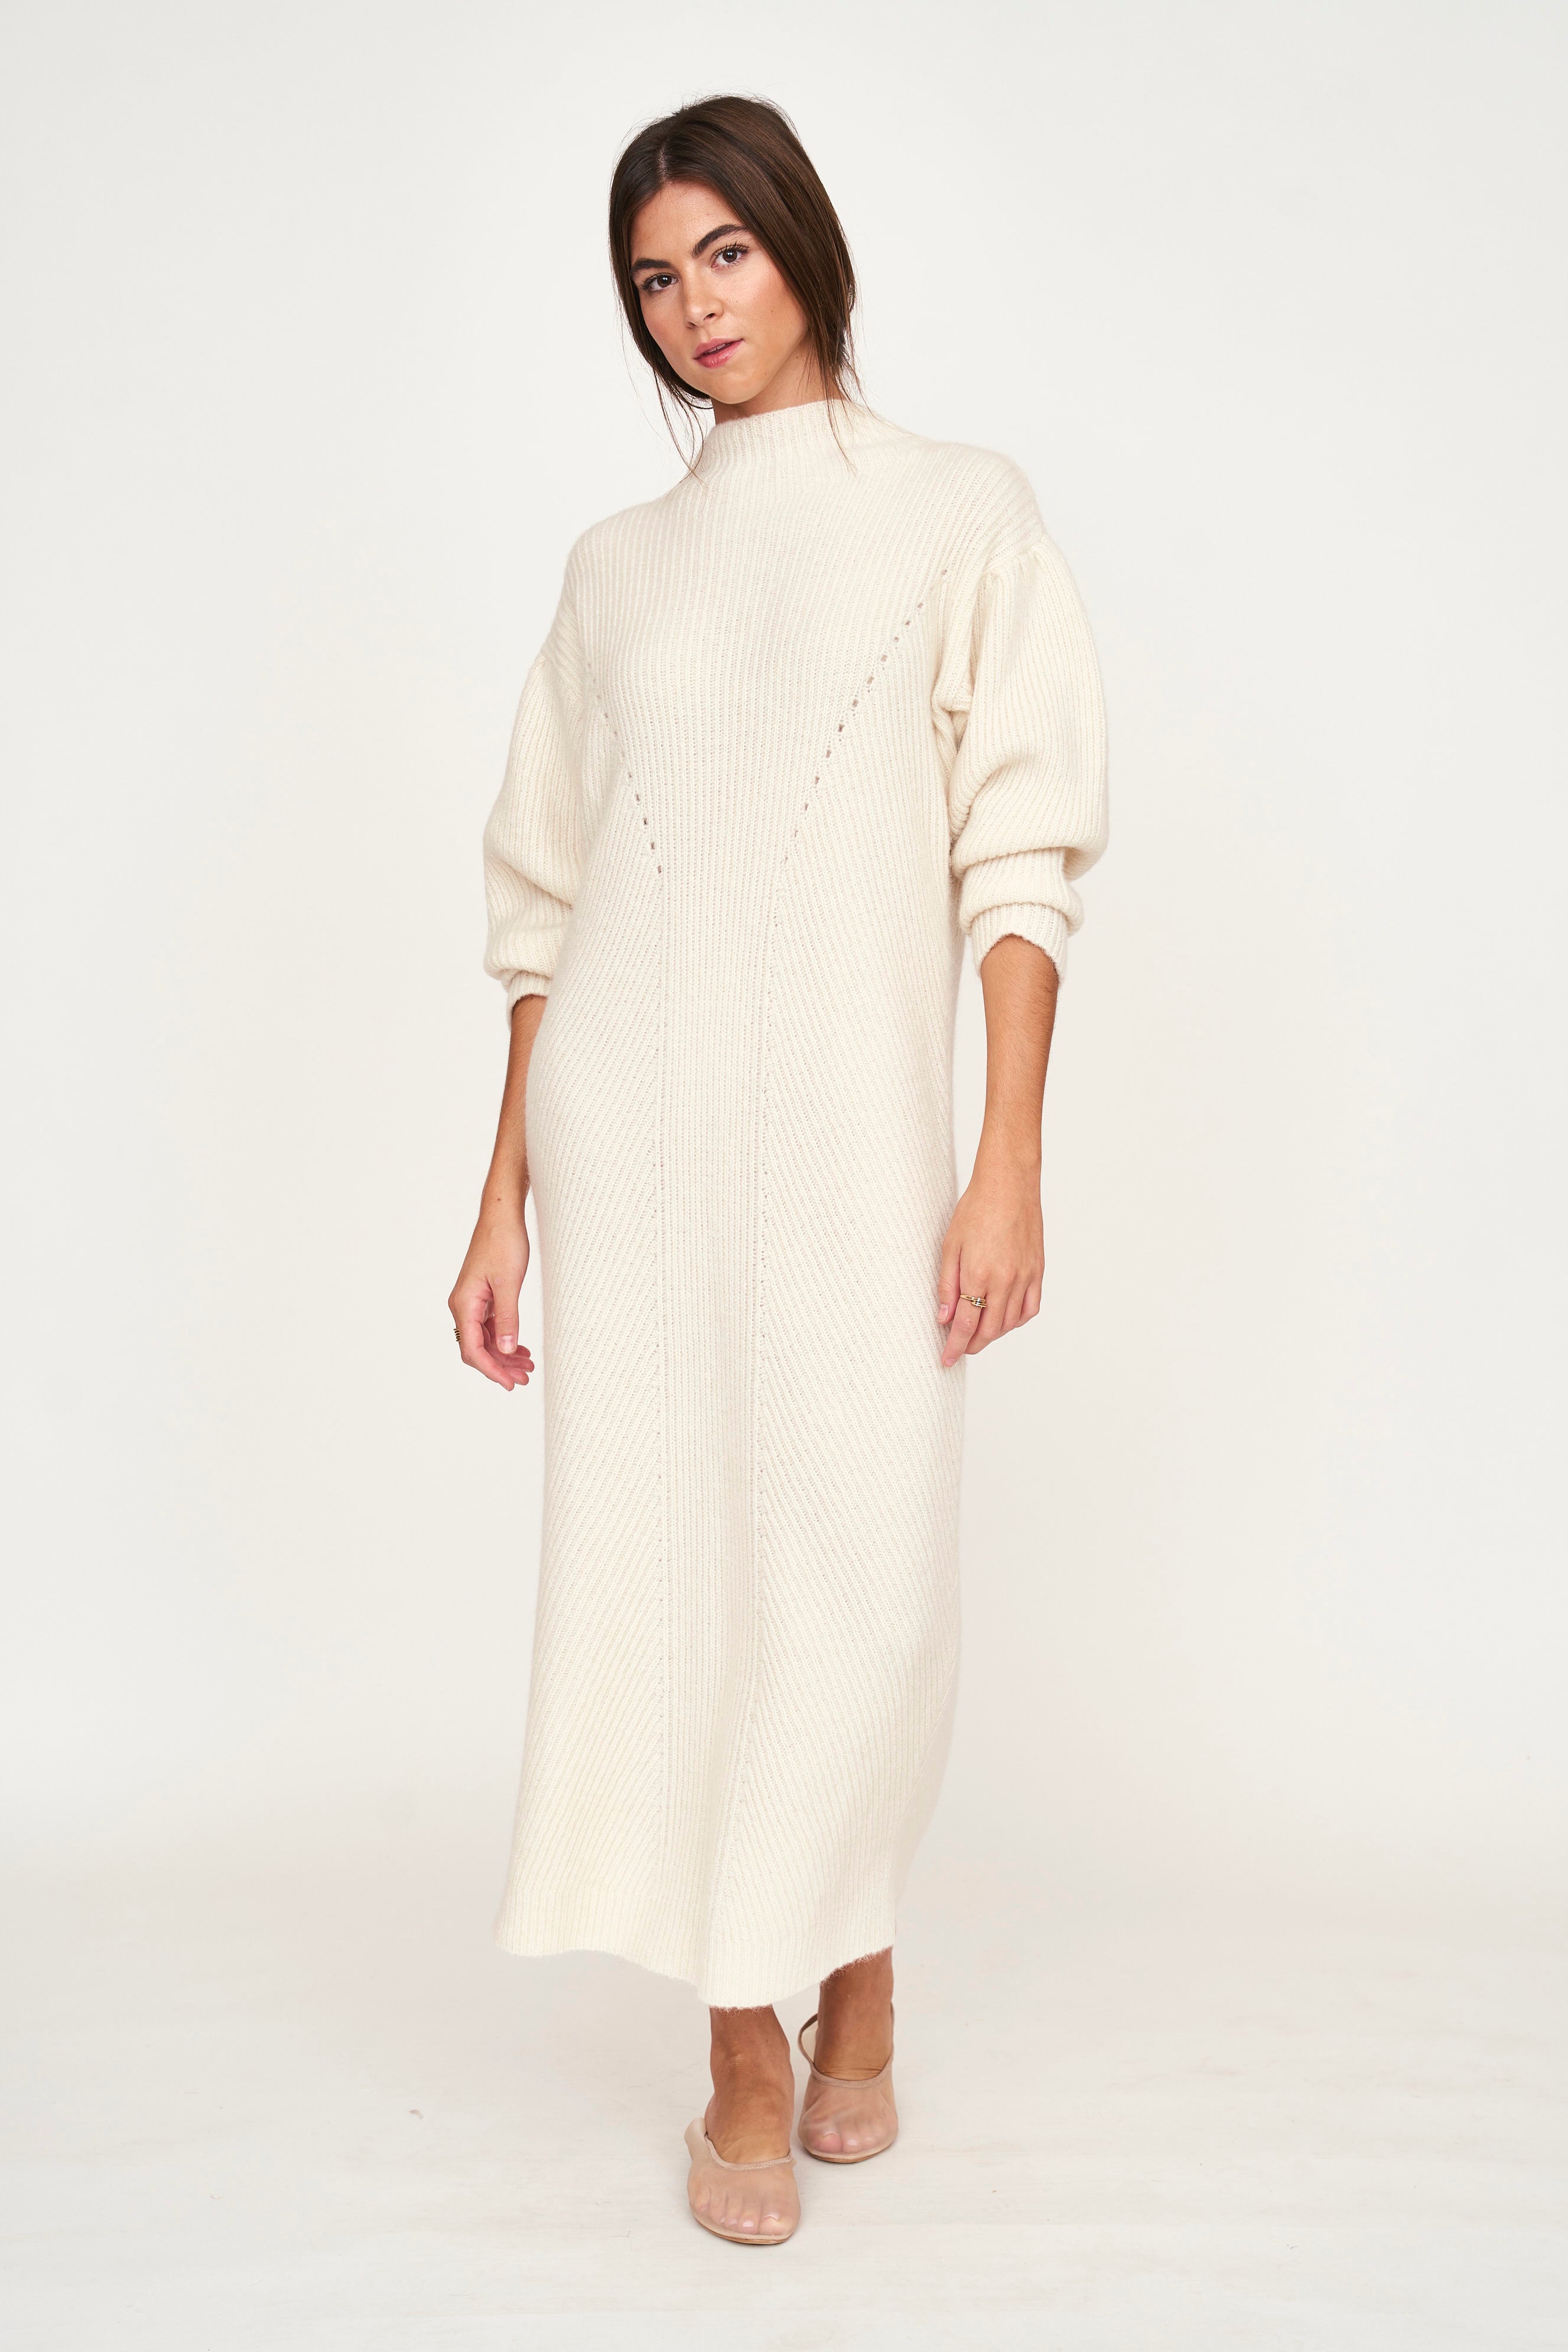 Girl wearing MIRTH women's knit pichu pichu sweater dress in ivory white wool